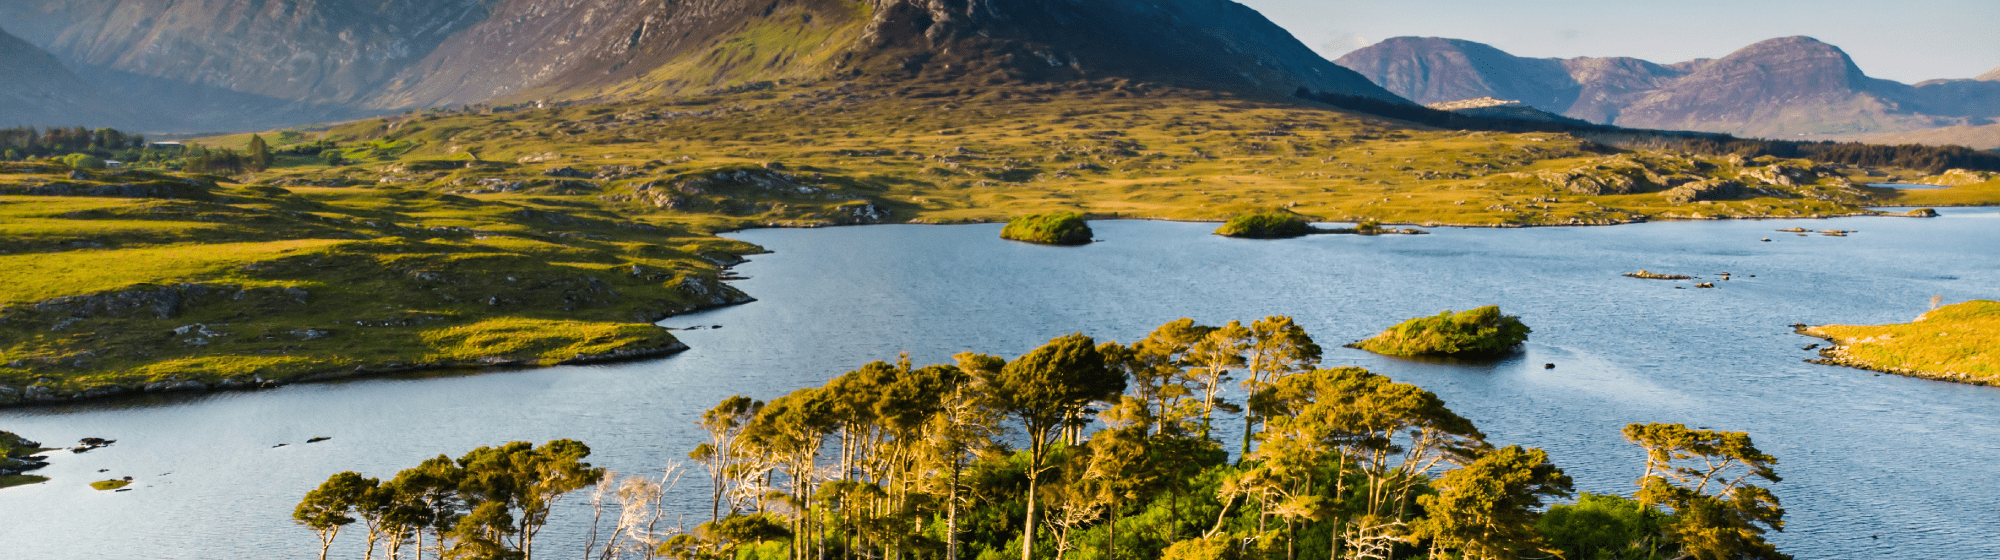 L'île d’Emeraude en plein milieu de la nature sauvage d'Irlande